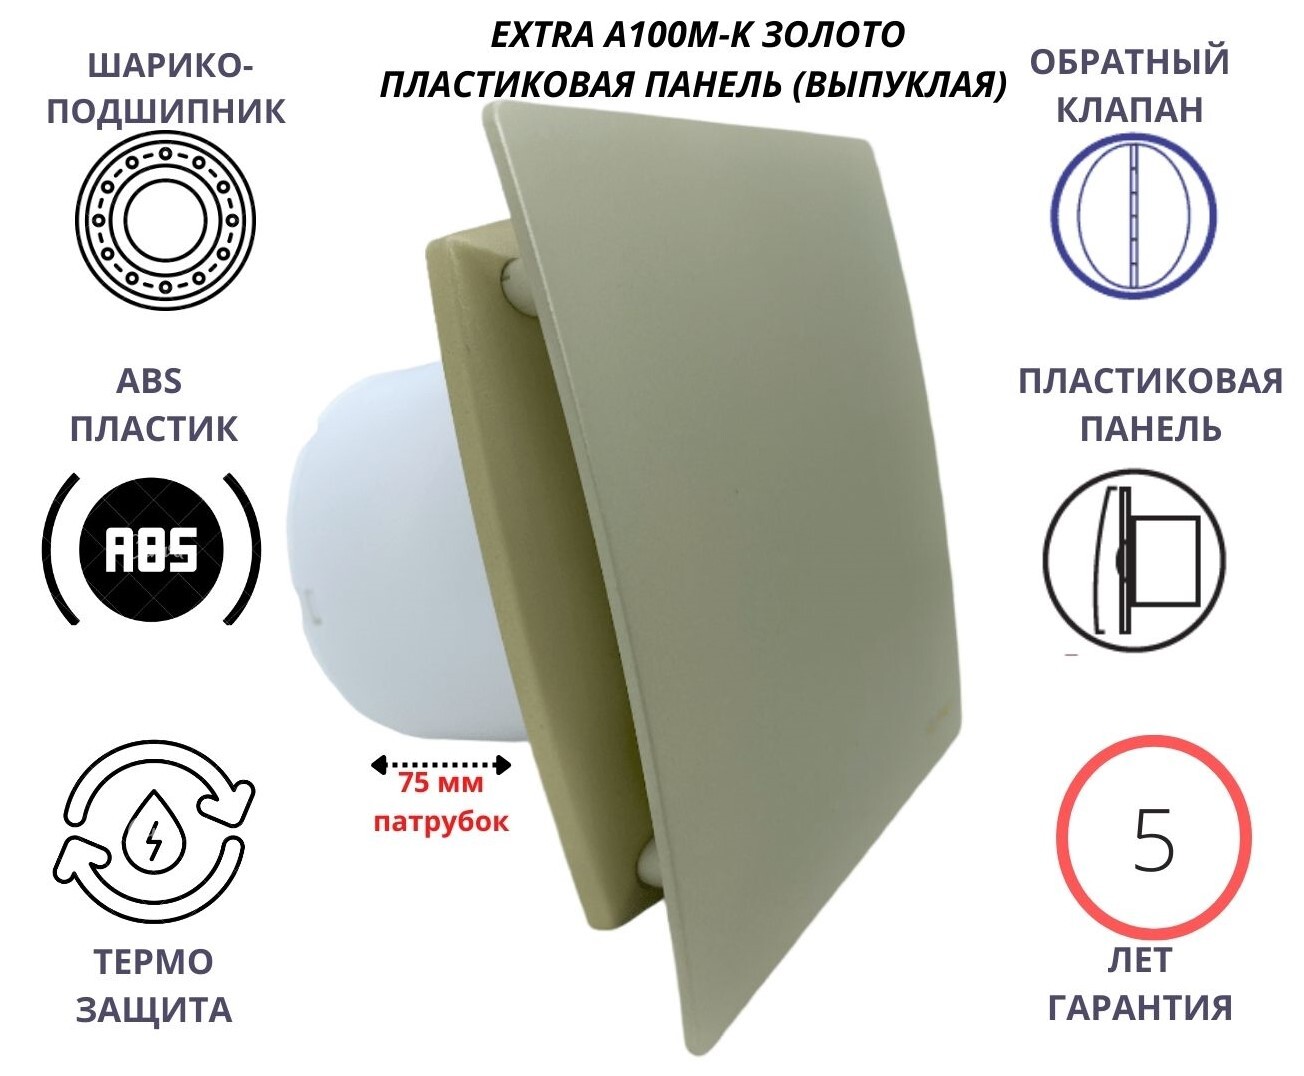 Вентилятор MTG d100мм с пластиковой золотой панелью A100М-K, Сербия вентилятор mtg d100мм с пластиковой плоской панелью a100м pl камень беж